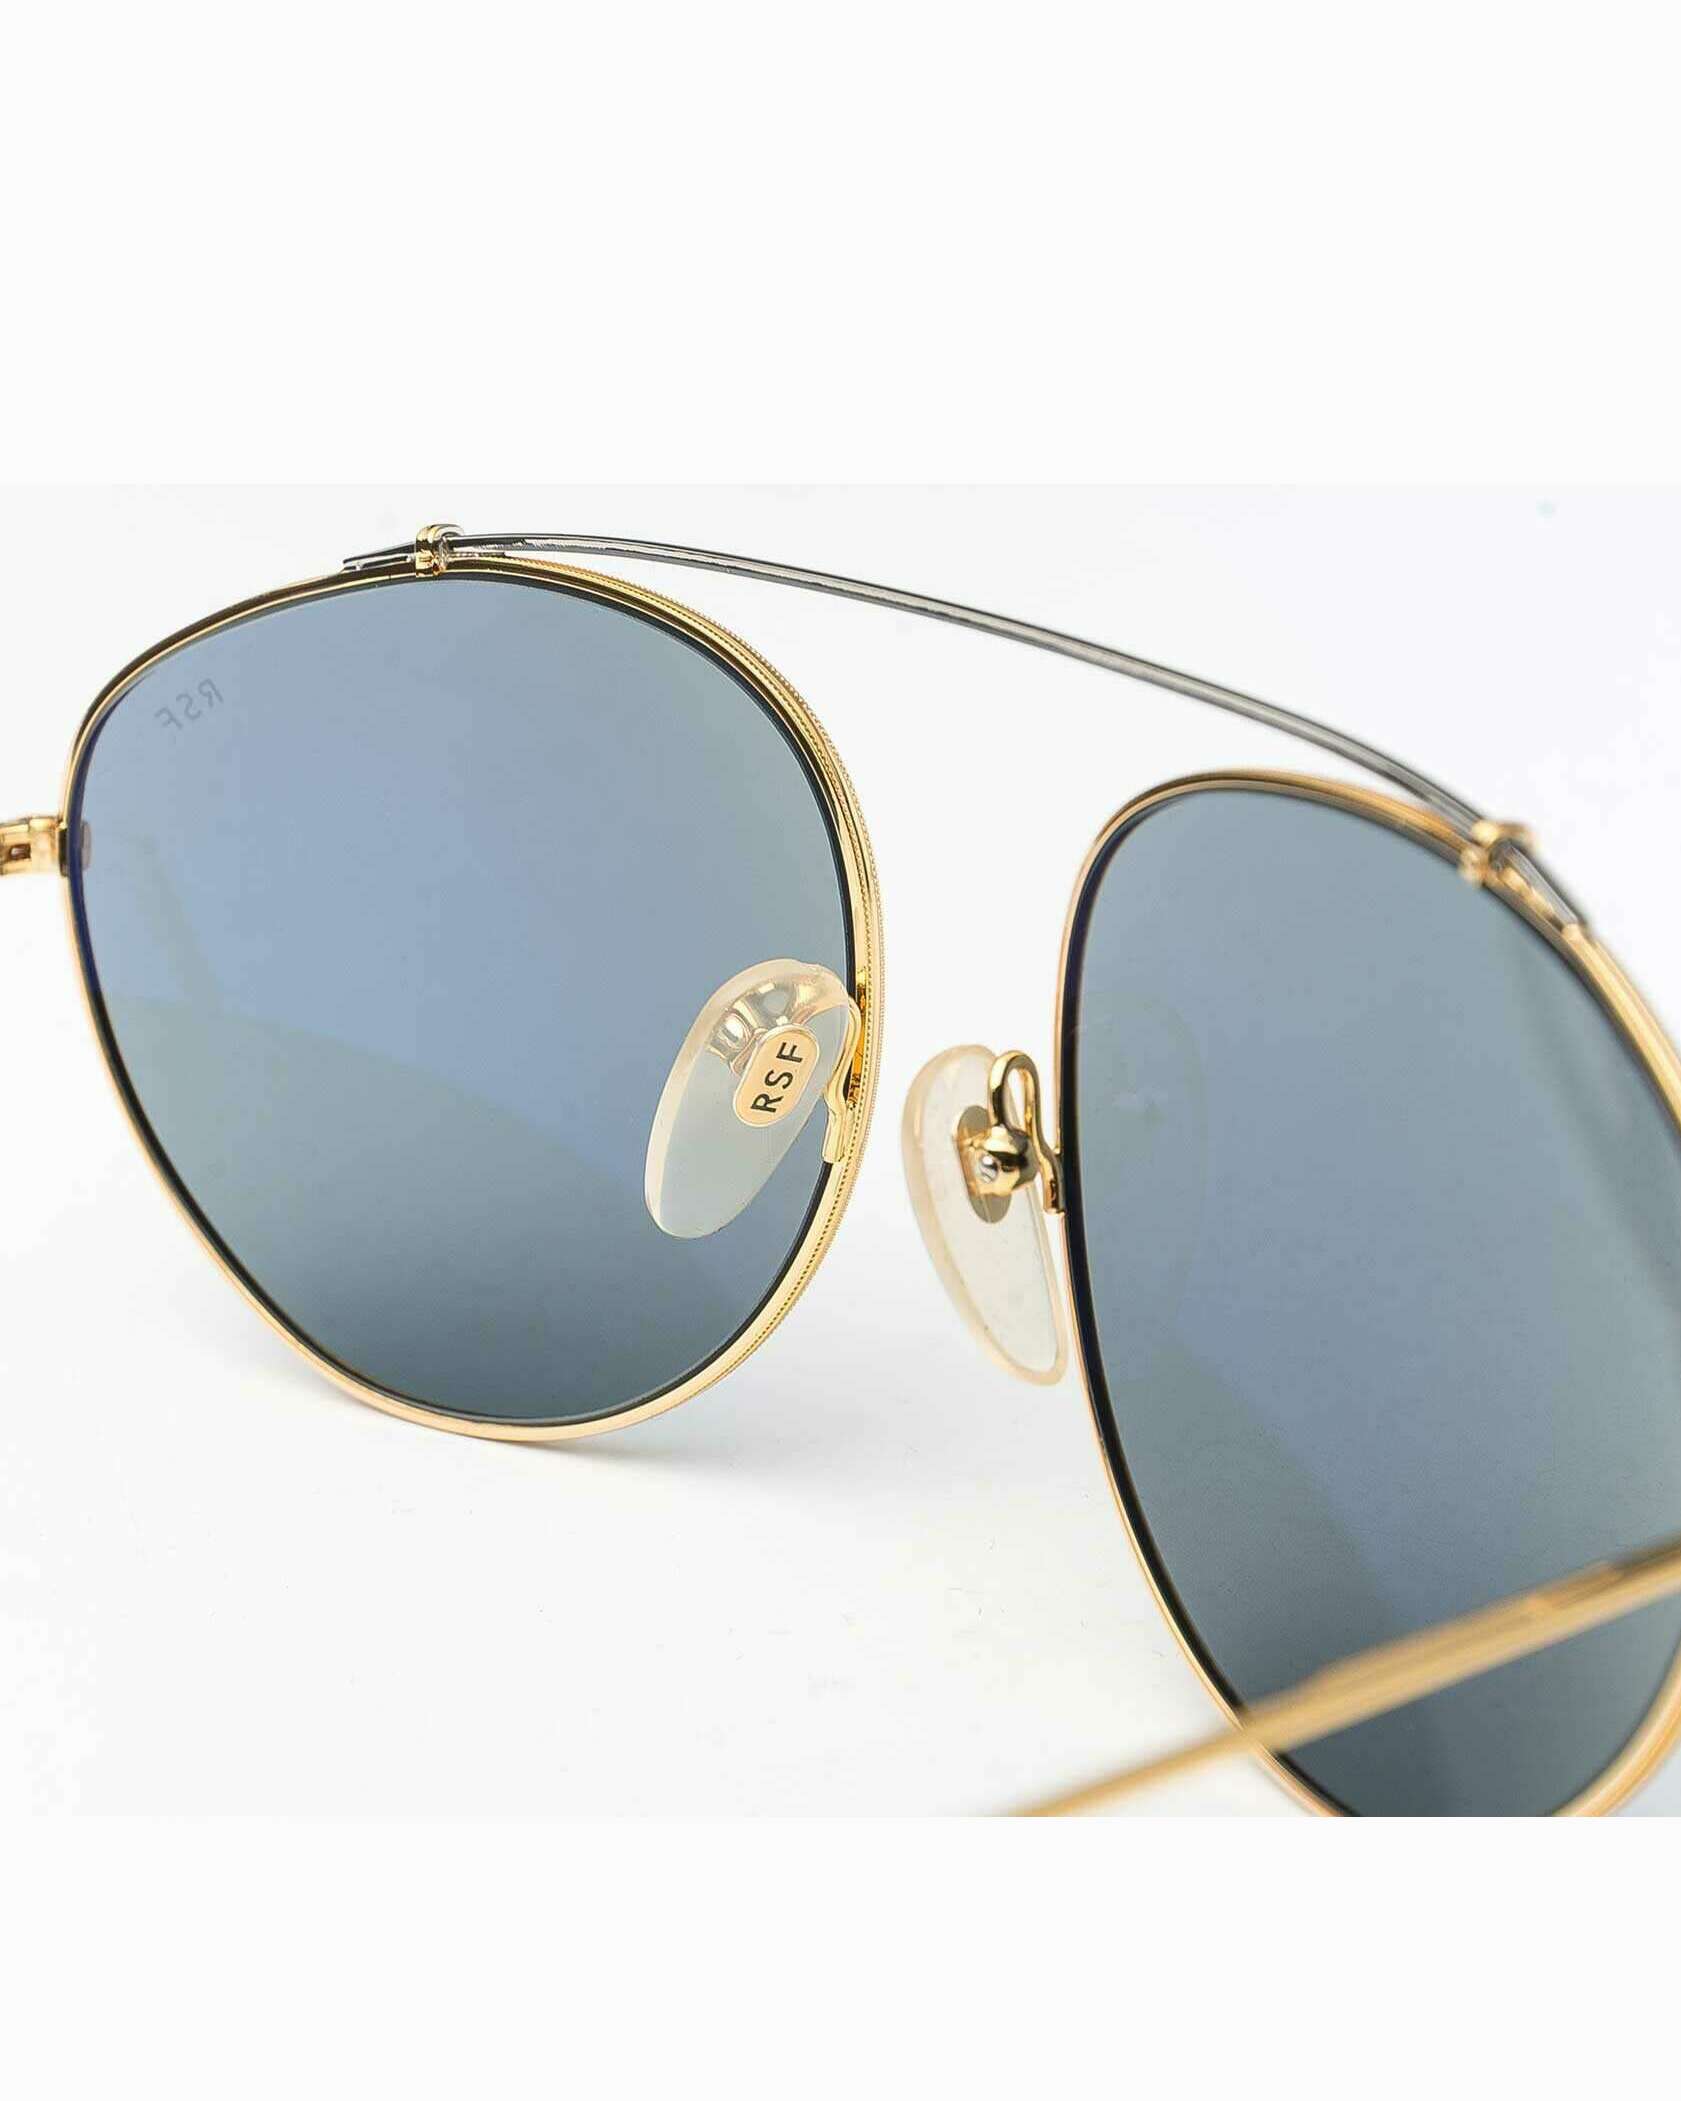 Retrosuperfuture Leon Blue Aviator Sunglasses Gold/Silver Super-724 60mm 